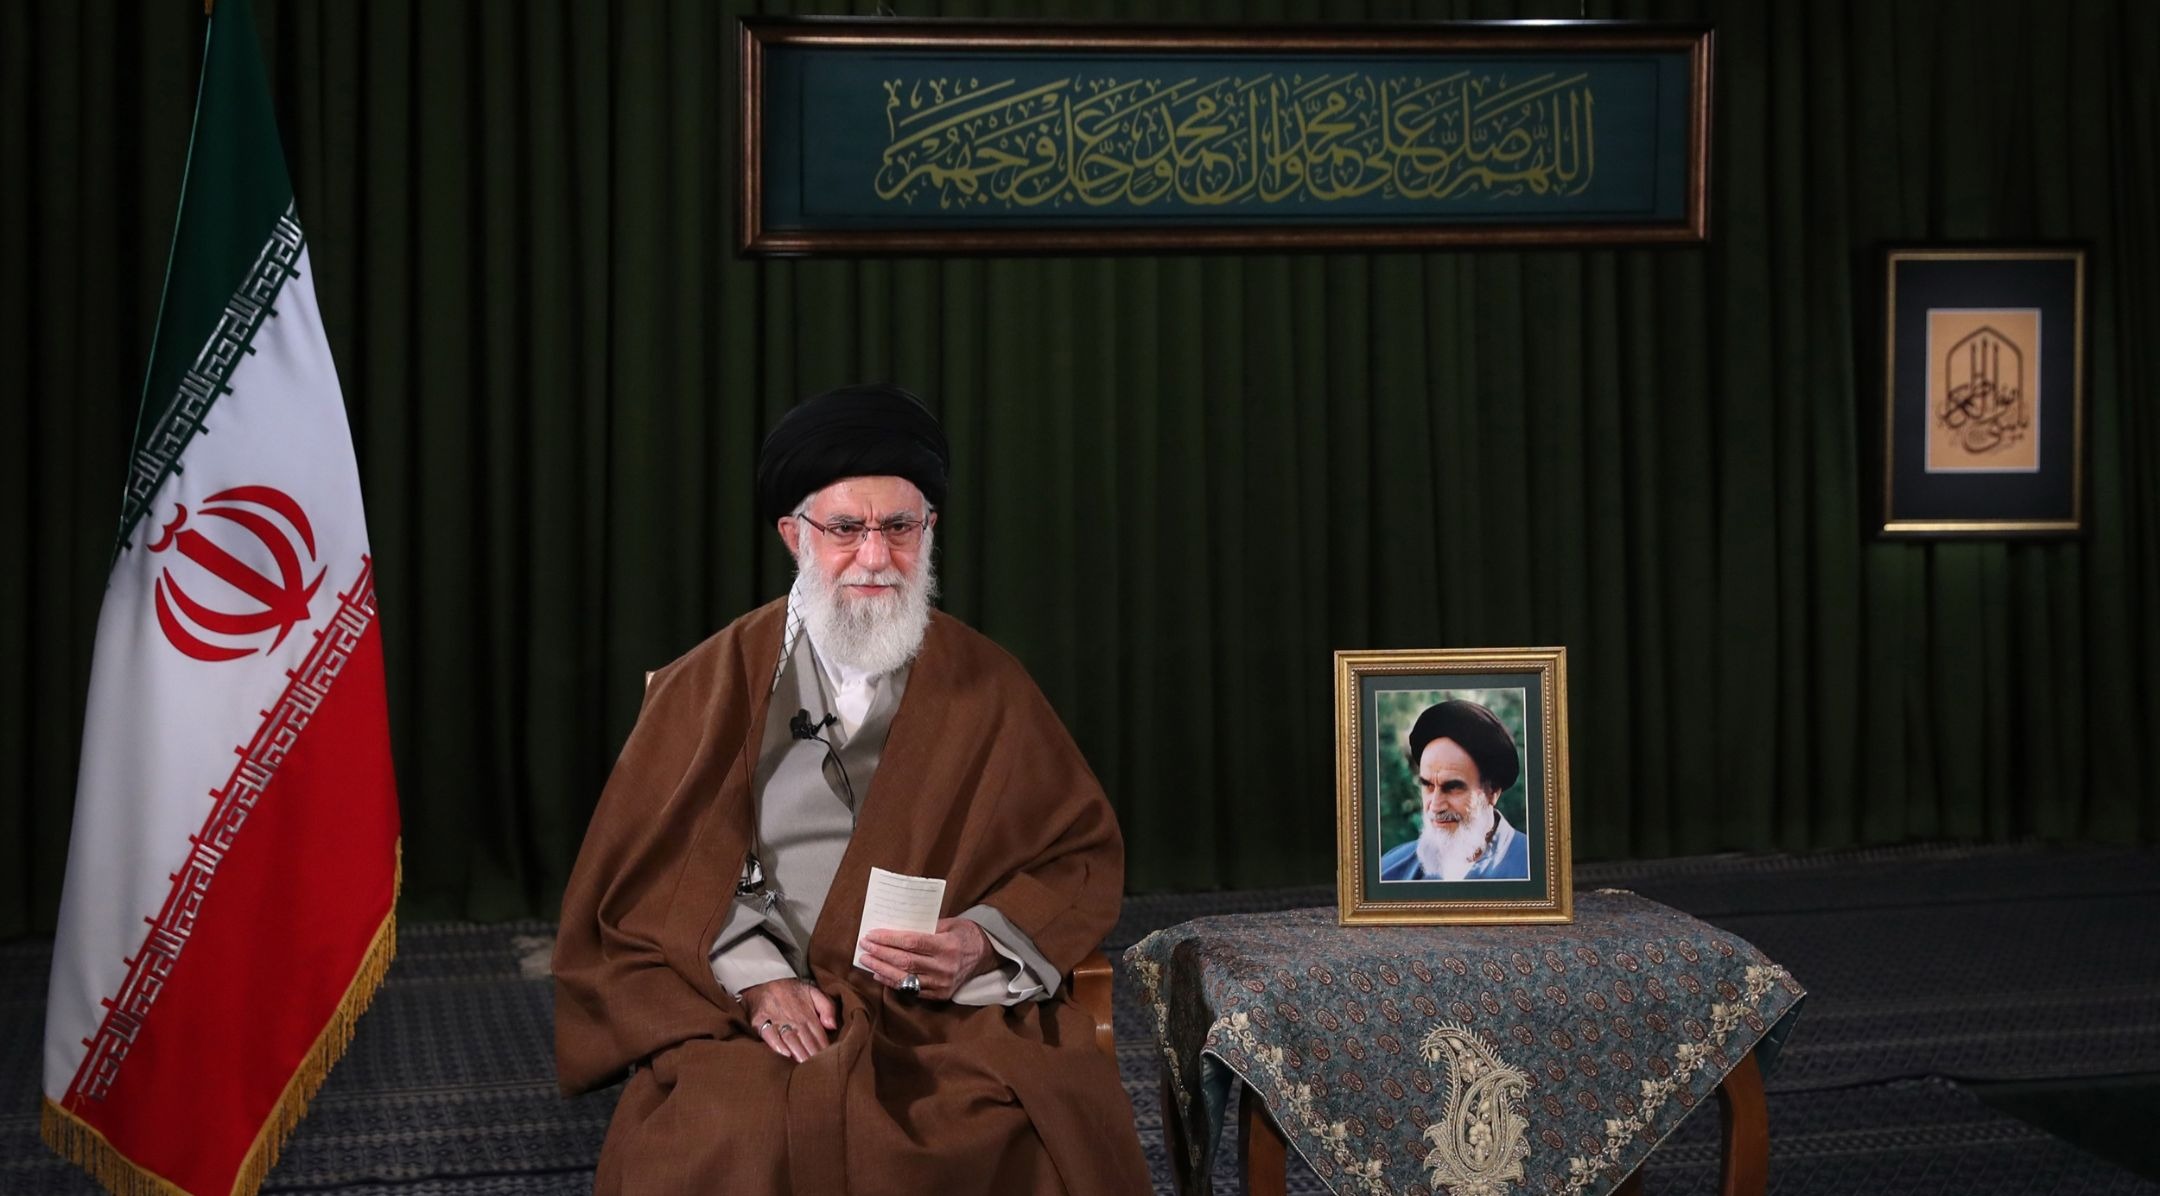 מטה סוגר את החשבונות של המנהיג האיראני על הודעותיו על חמאס וישראל